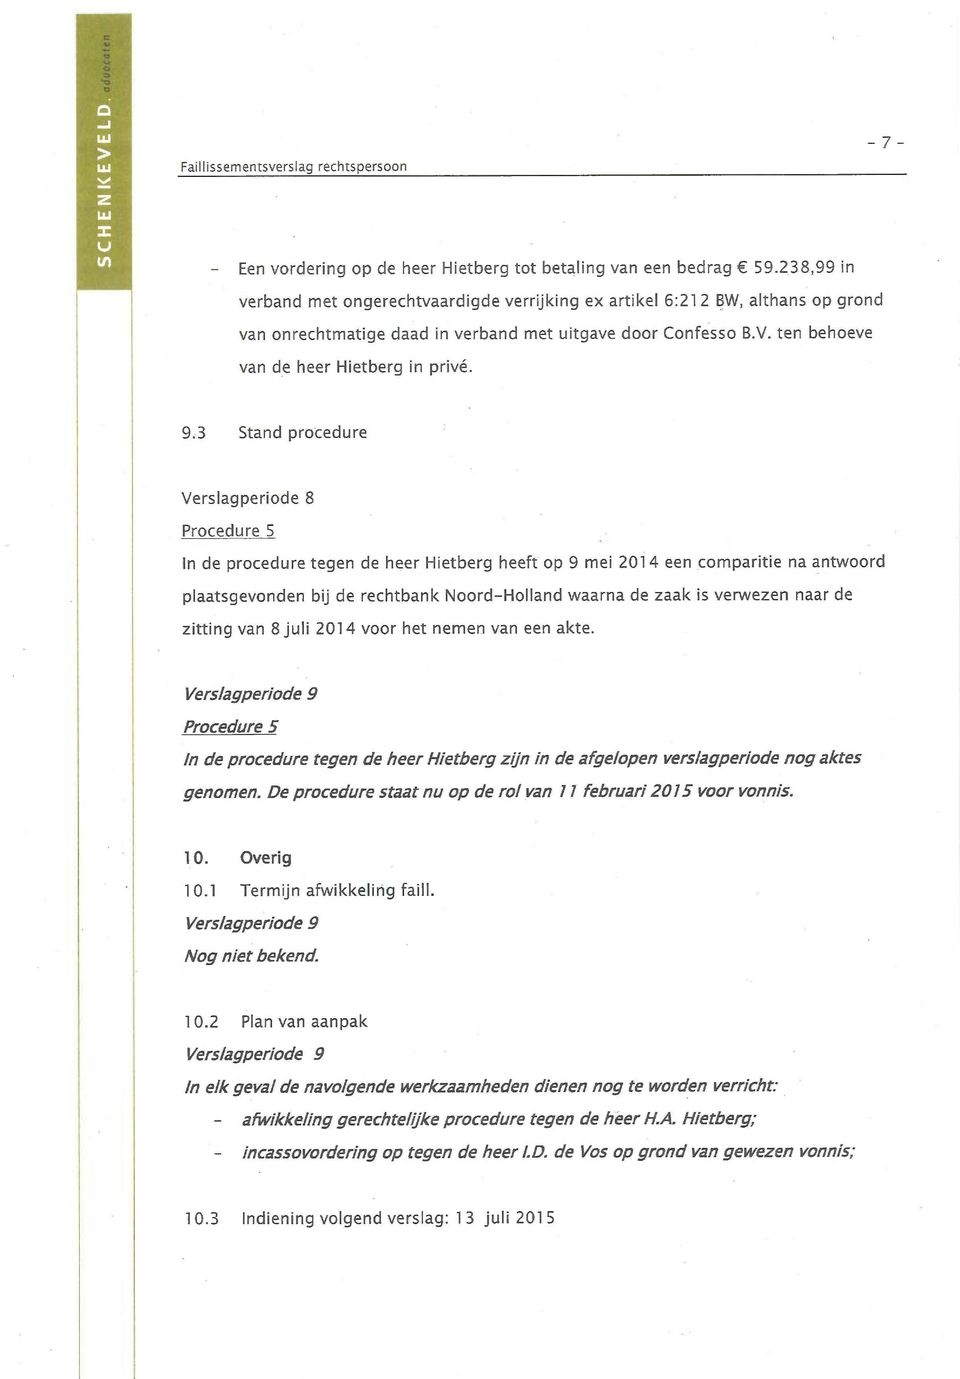 9.3 Stand procedure Verslagperiode 8 Procedure 5 In de procedure tegen de heer Hietberg heeft op 9 mei 201 4 een comparitie na antwoord plaatsgevonden bij de rechtbank Noord-Holland waarna de zaak is